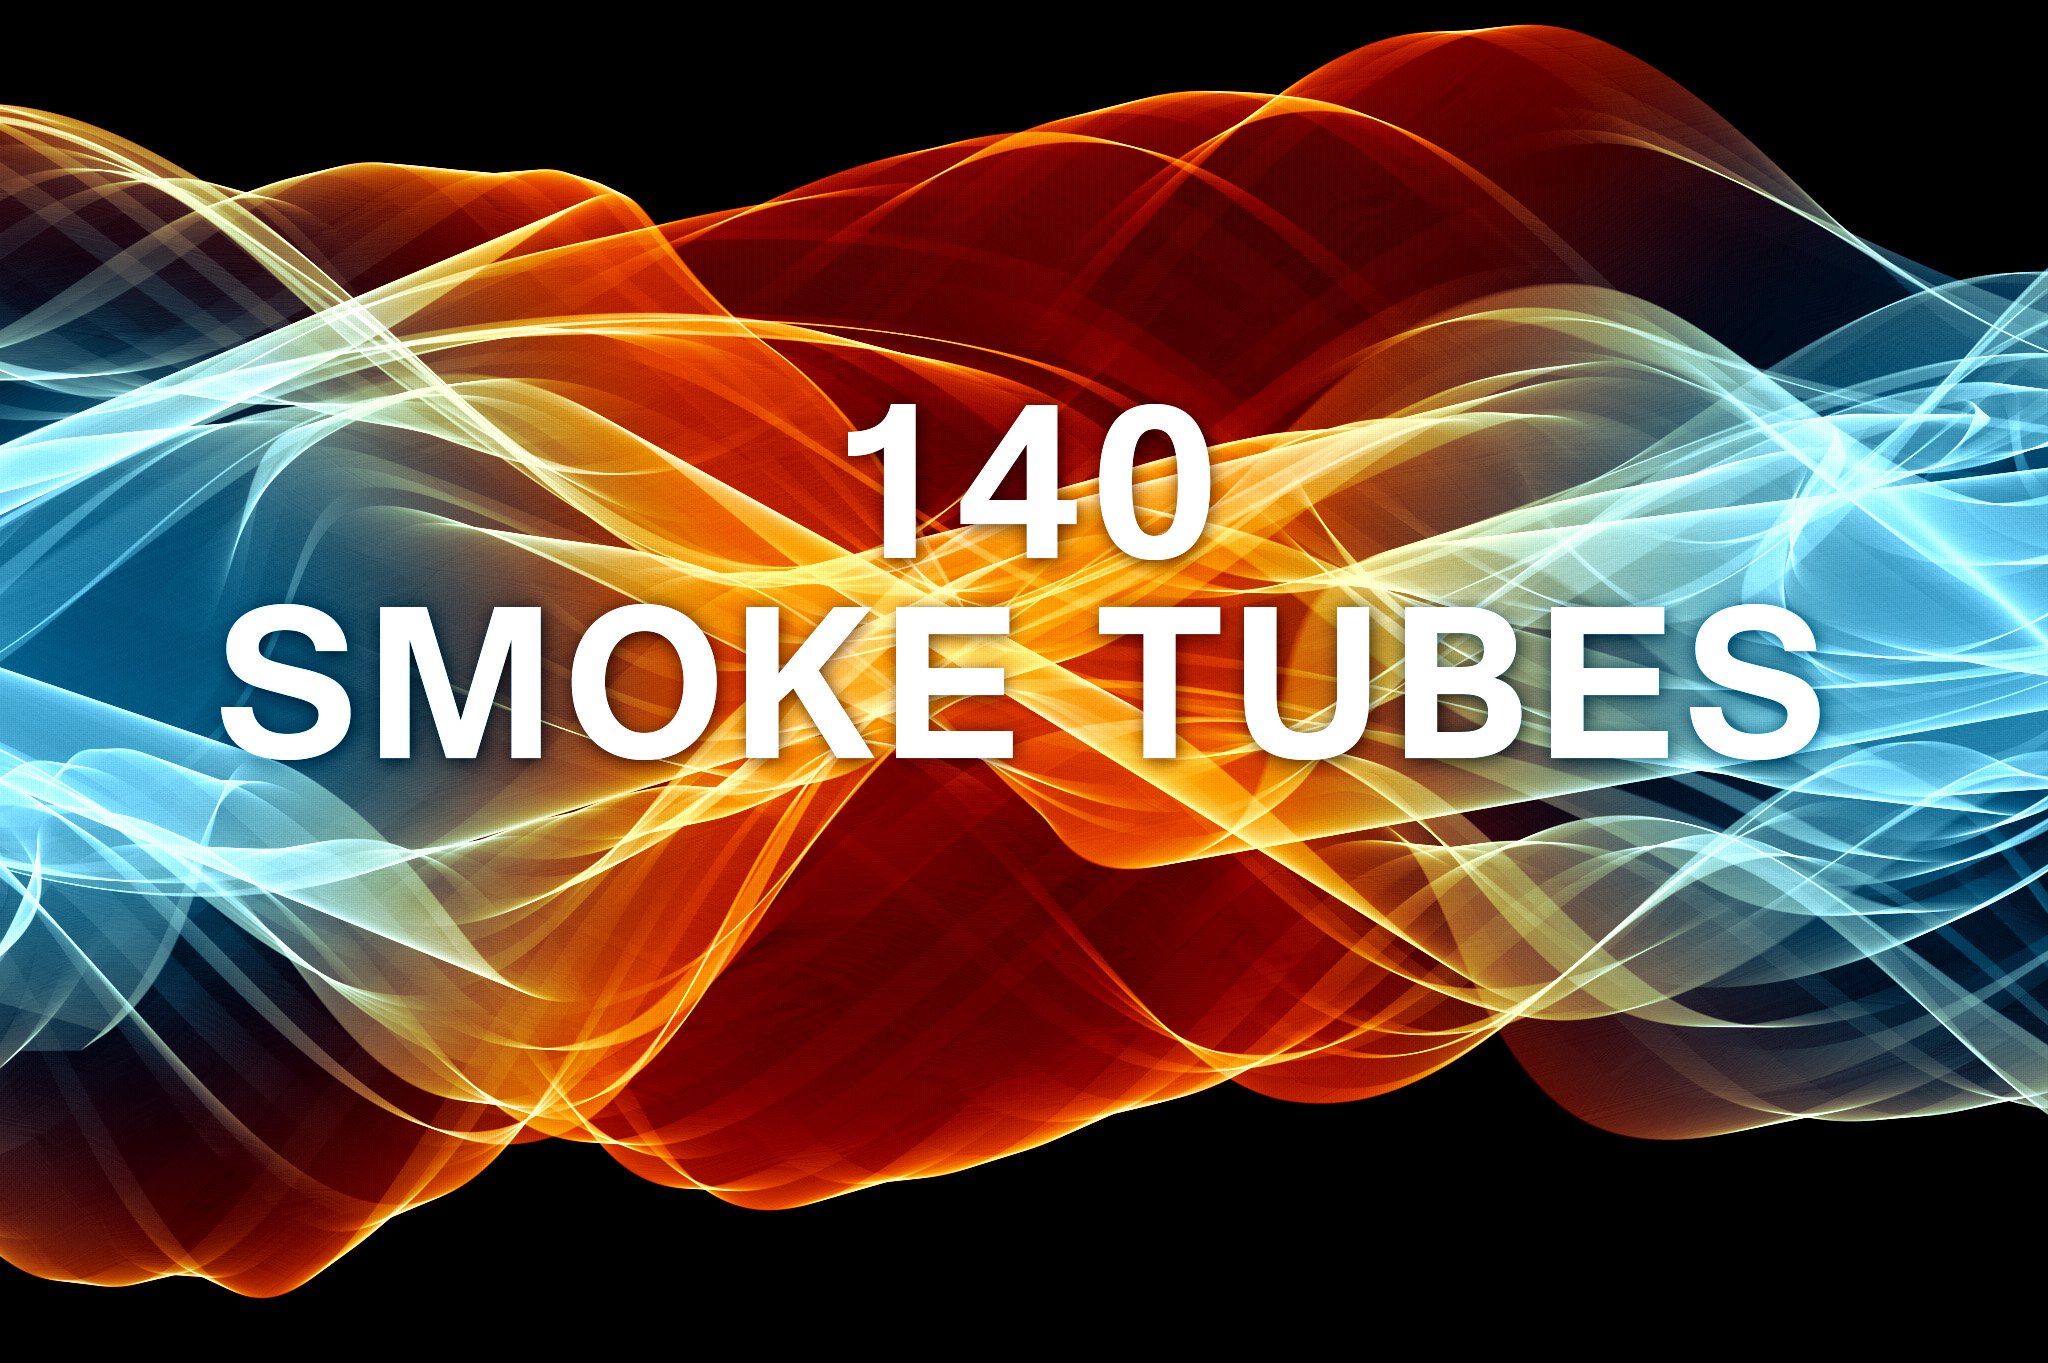 140 Smoke Tube Brushes & PNGcover image.